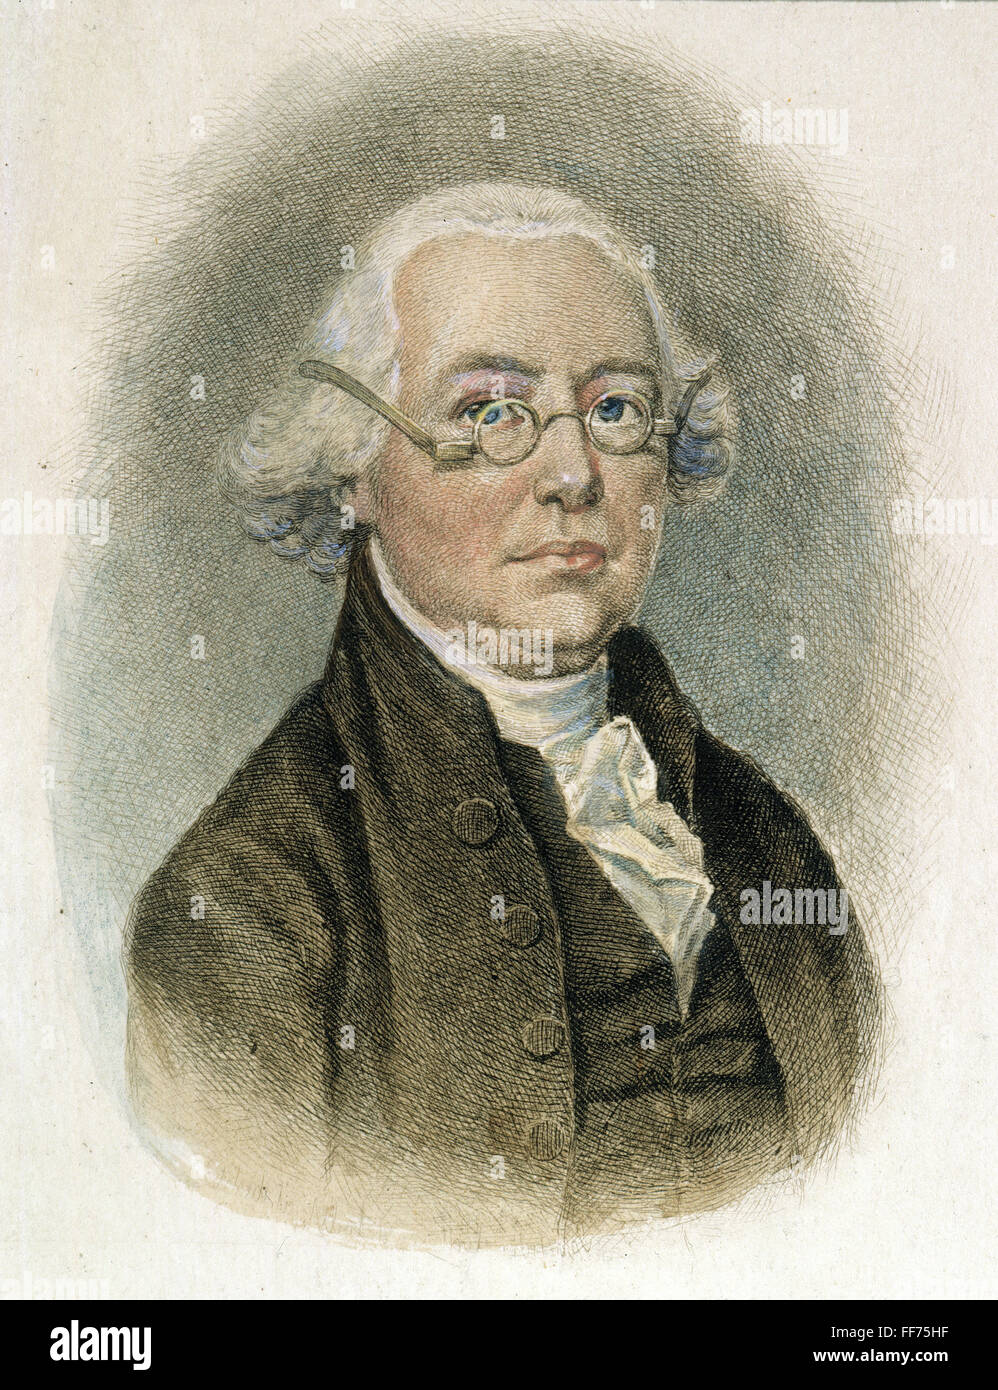 JAMES WILSON (1742-1798). /nAmerican Rechtsanwalt und Politiker: farbige Radierung, 1888, von Albert Rosenthal. Stockfoto